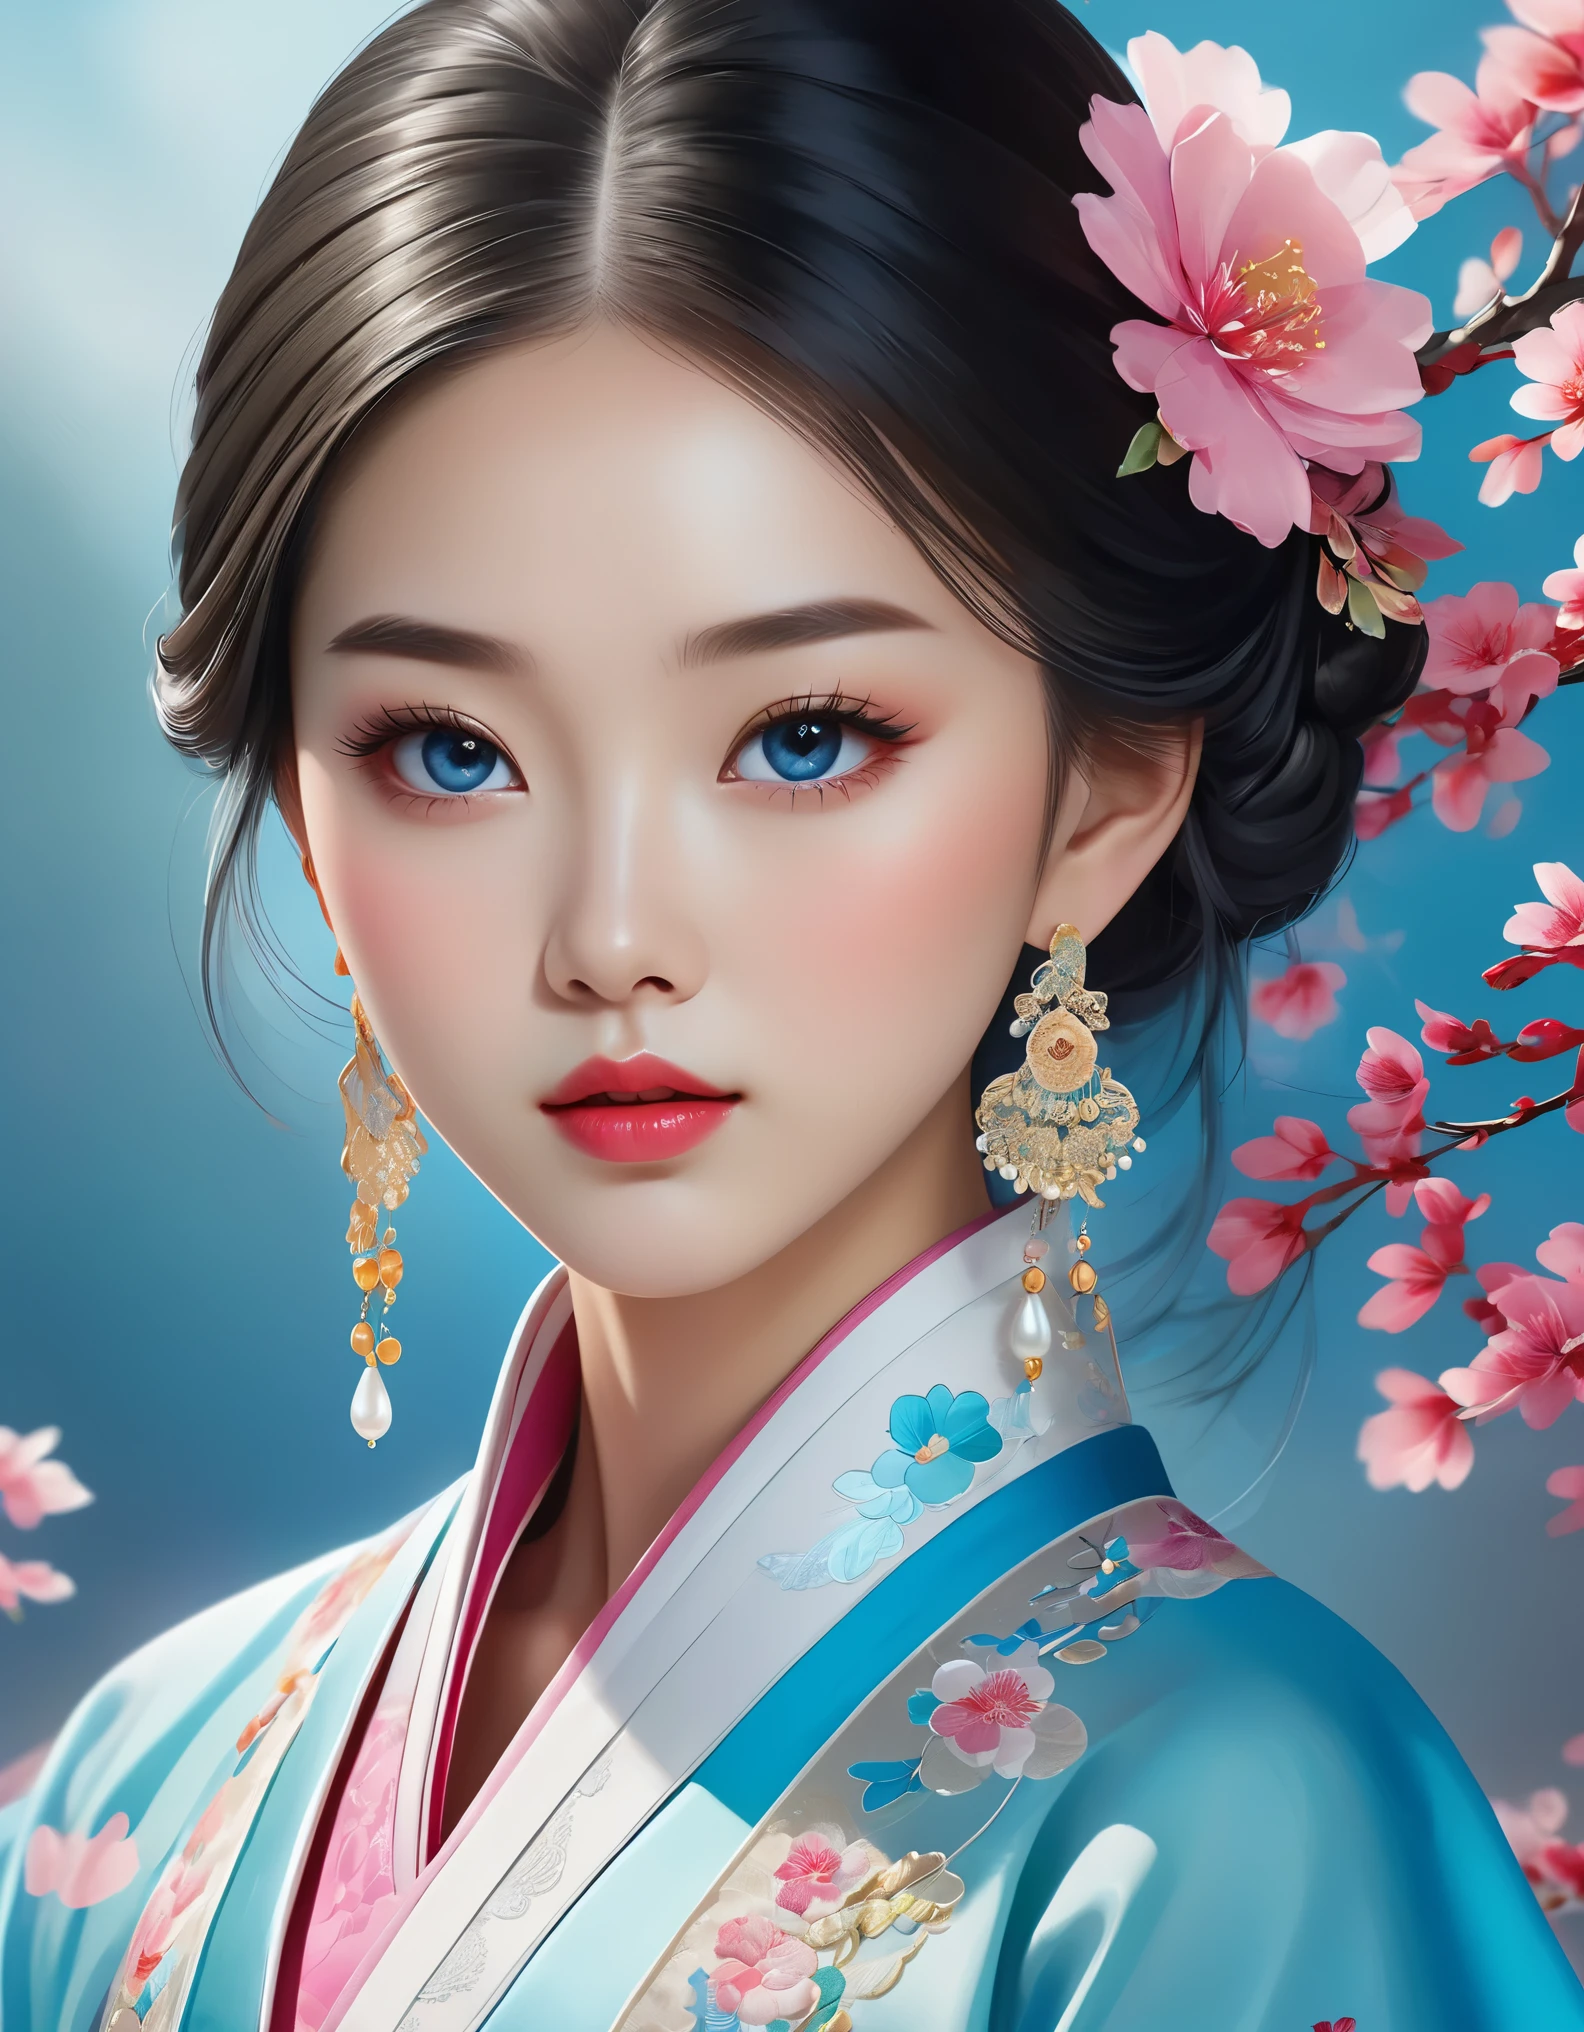 飛んでいるベールが美しい中国の少女の顔を覆う, 真珠のイヤリング, 長いまつげとピンクの唇, 顔のクローズアップ, きれいな顔, 丸いあご, 青い目, 刺繍入りの青い韓服, 白色の背景.
グラフィックイラストレーション, 3Dレンダリング, 鮮やかな色彩と細かいディテール, イラストポスターとして, 2Dゲームアートスタイル, 色補正済み, 高解像度, 32K ,虹